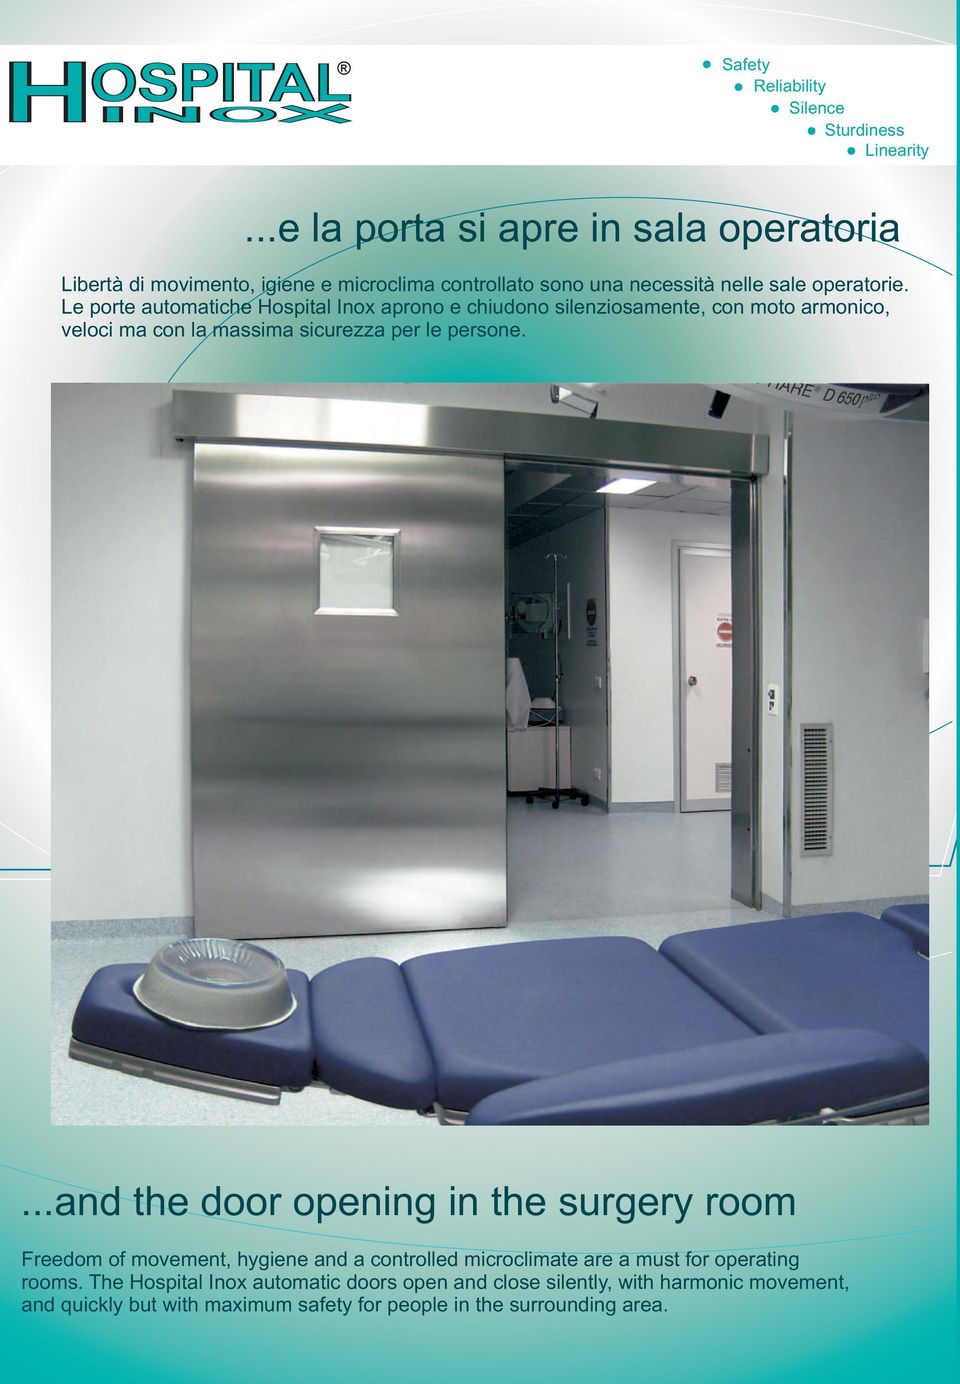 Le porte automatiche Hospital Inox aprono e chiudono silenziosamente, con moto armonico, veloci ma con la massima sicurezza per le persone.